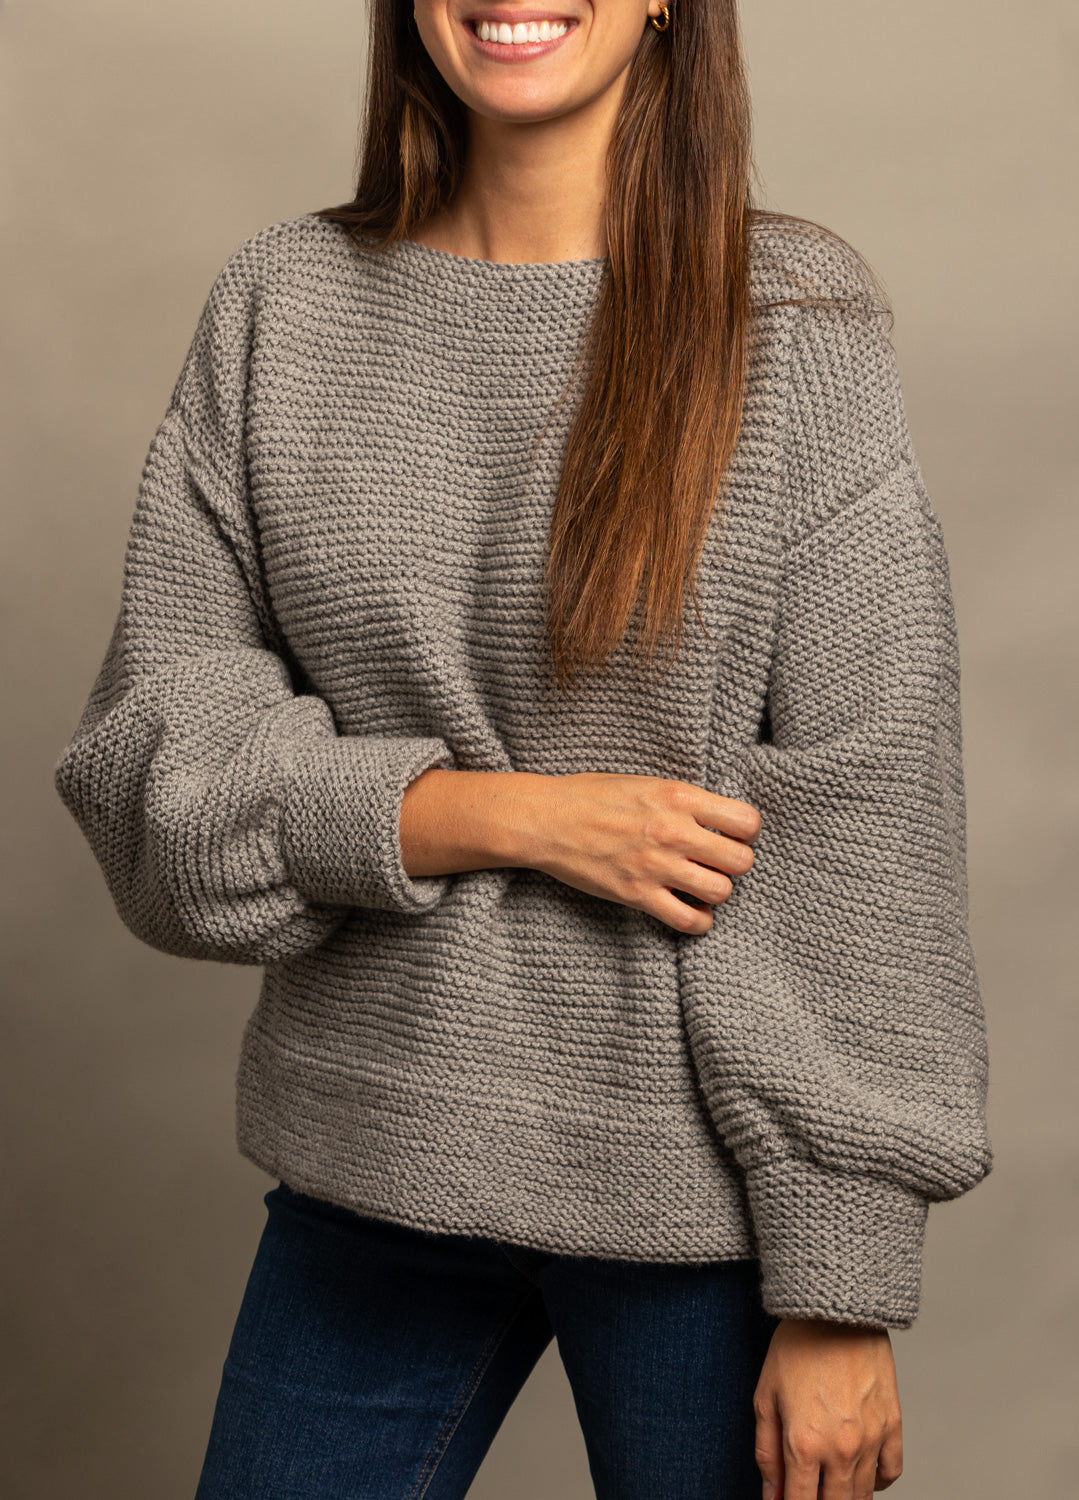 Bruxelles Sweater Kit